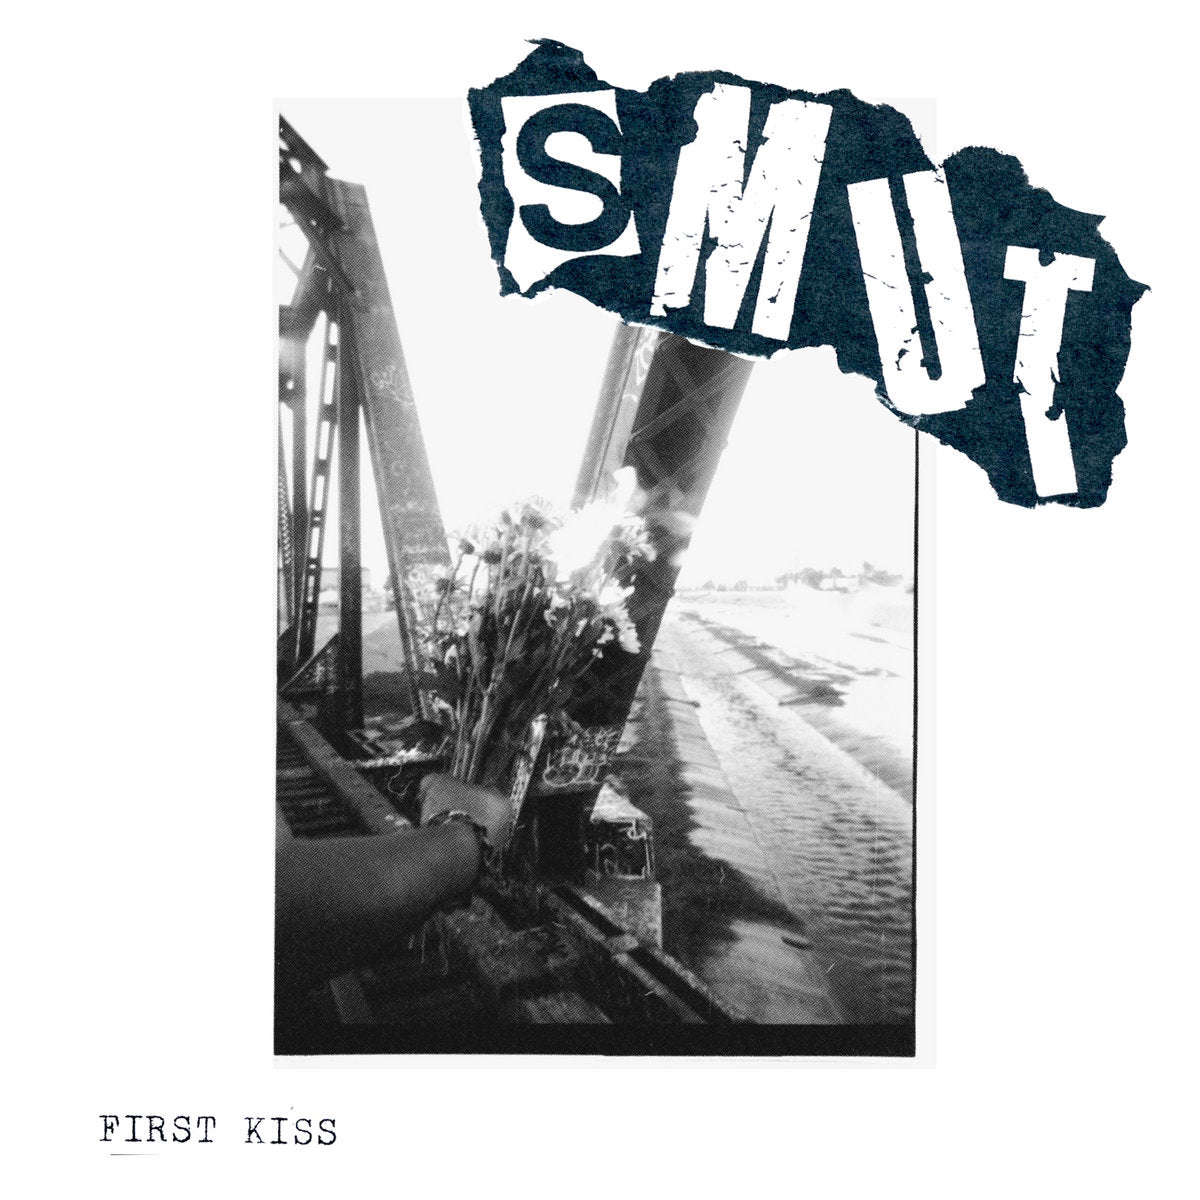 Smut - First Kiss LP - Vinyl - Iron Lung